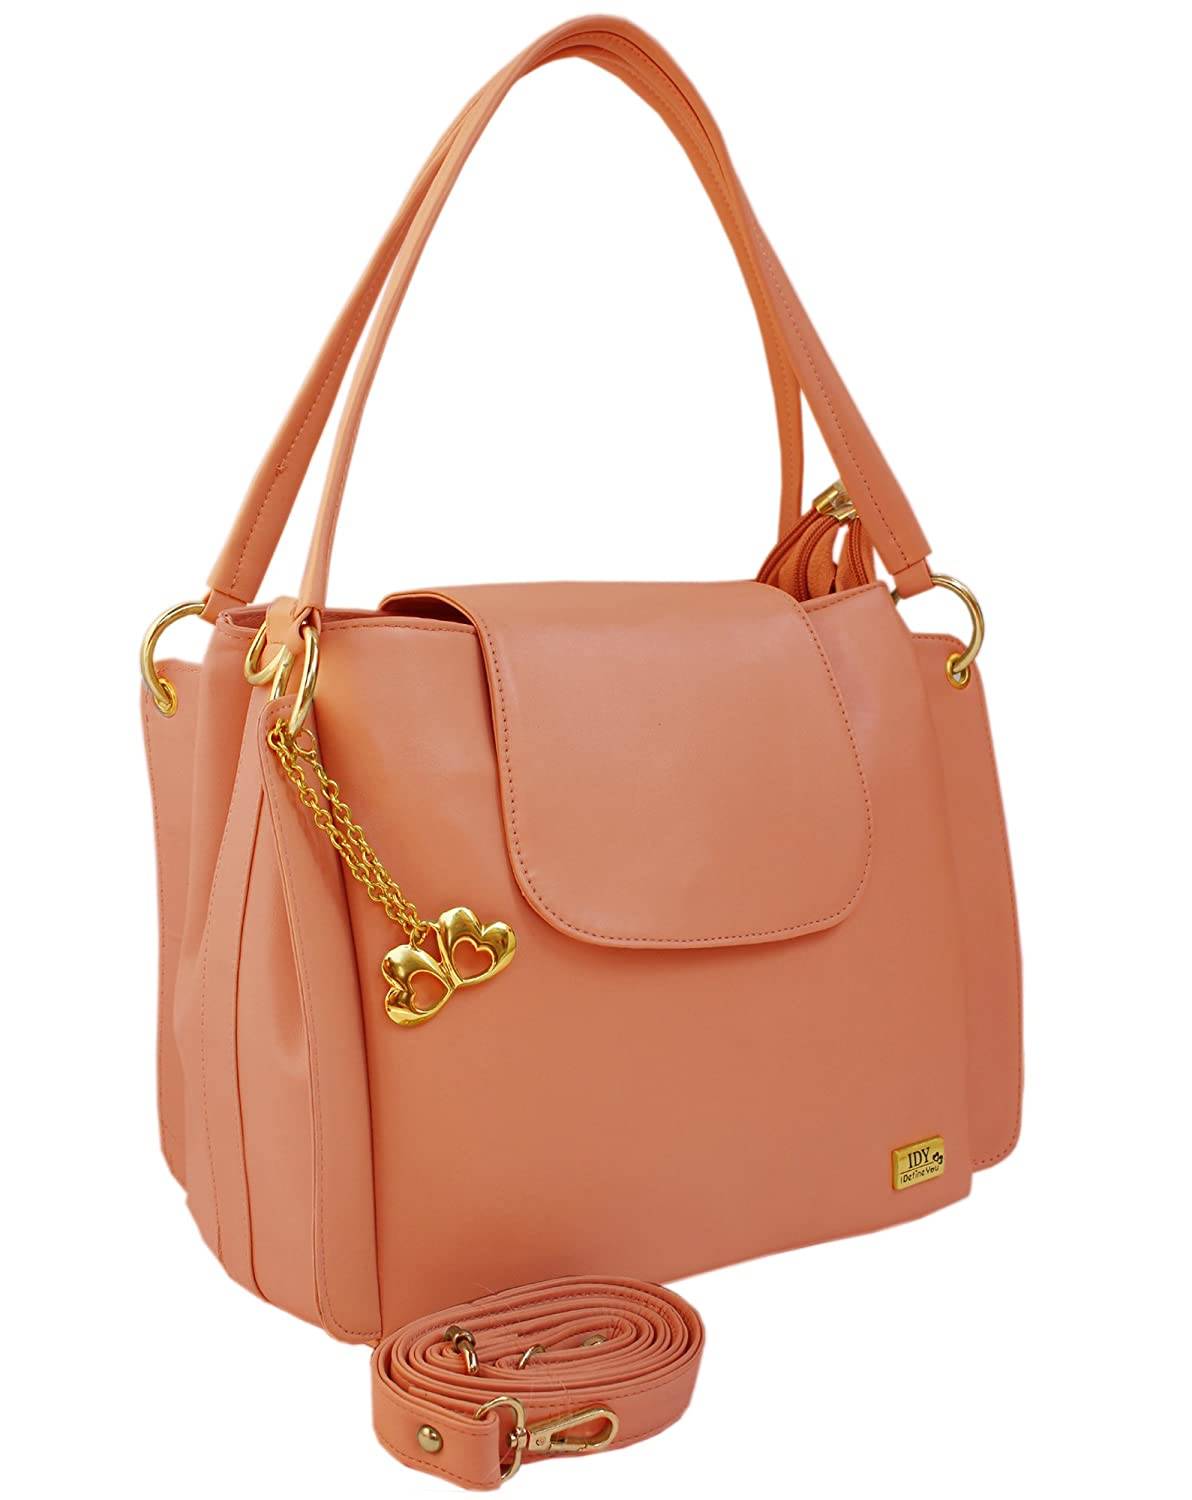 Buy SIRISHA Women Beige Hand-held Bag BEIGE Online @ Best Price in India |  Flipkart.com